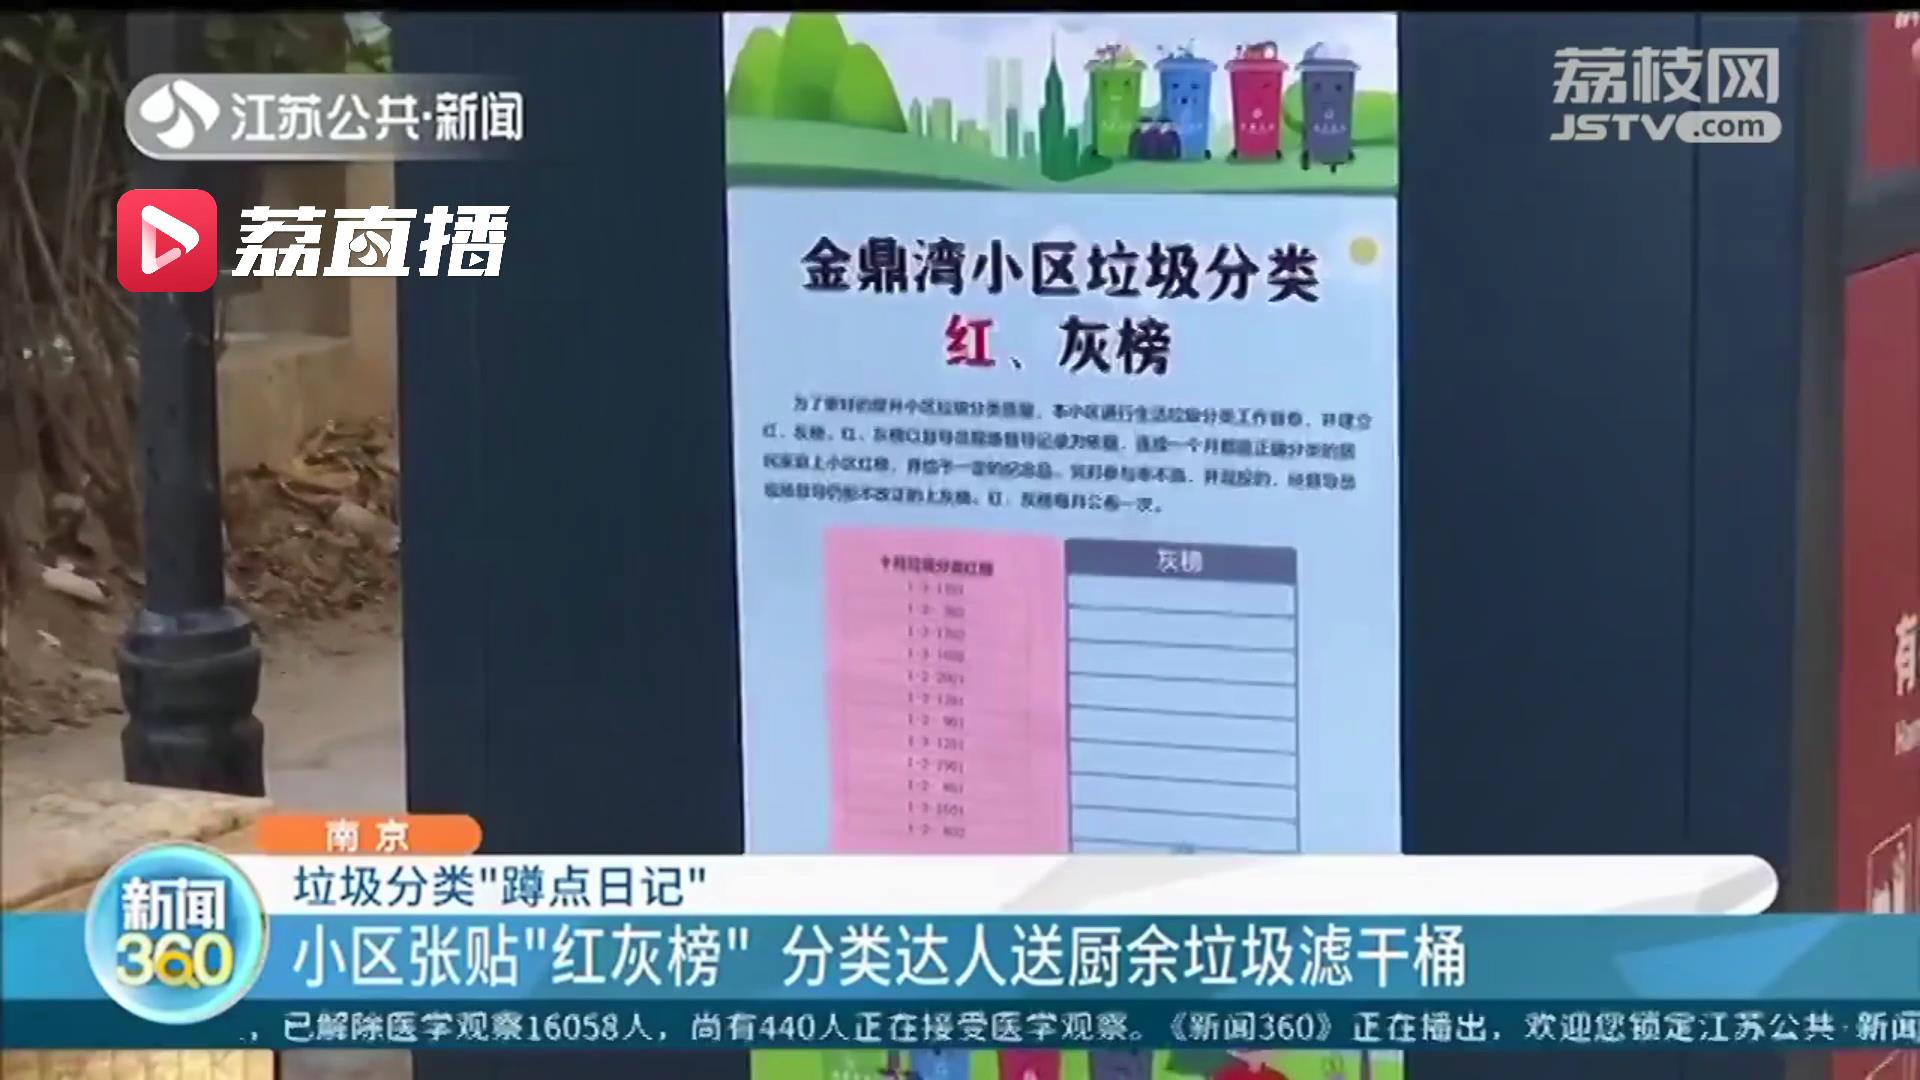 南京一小区开展“垃圾分类红灰榜”成为分类达人有奖励